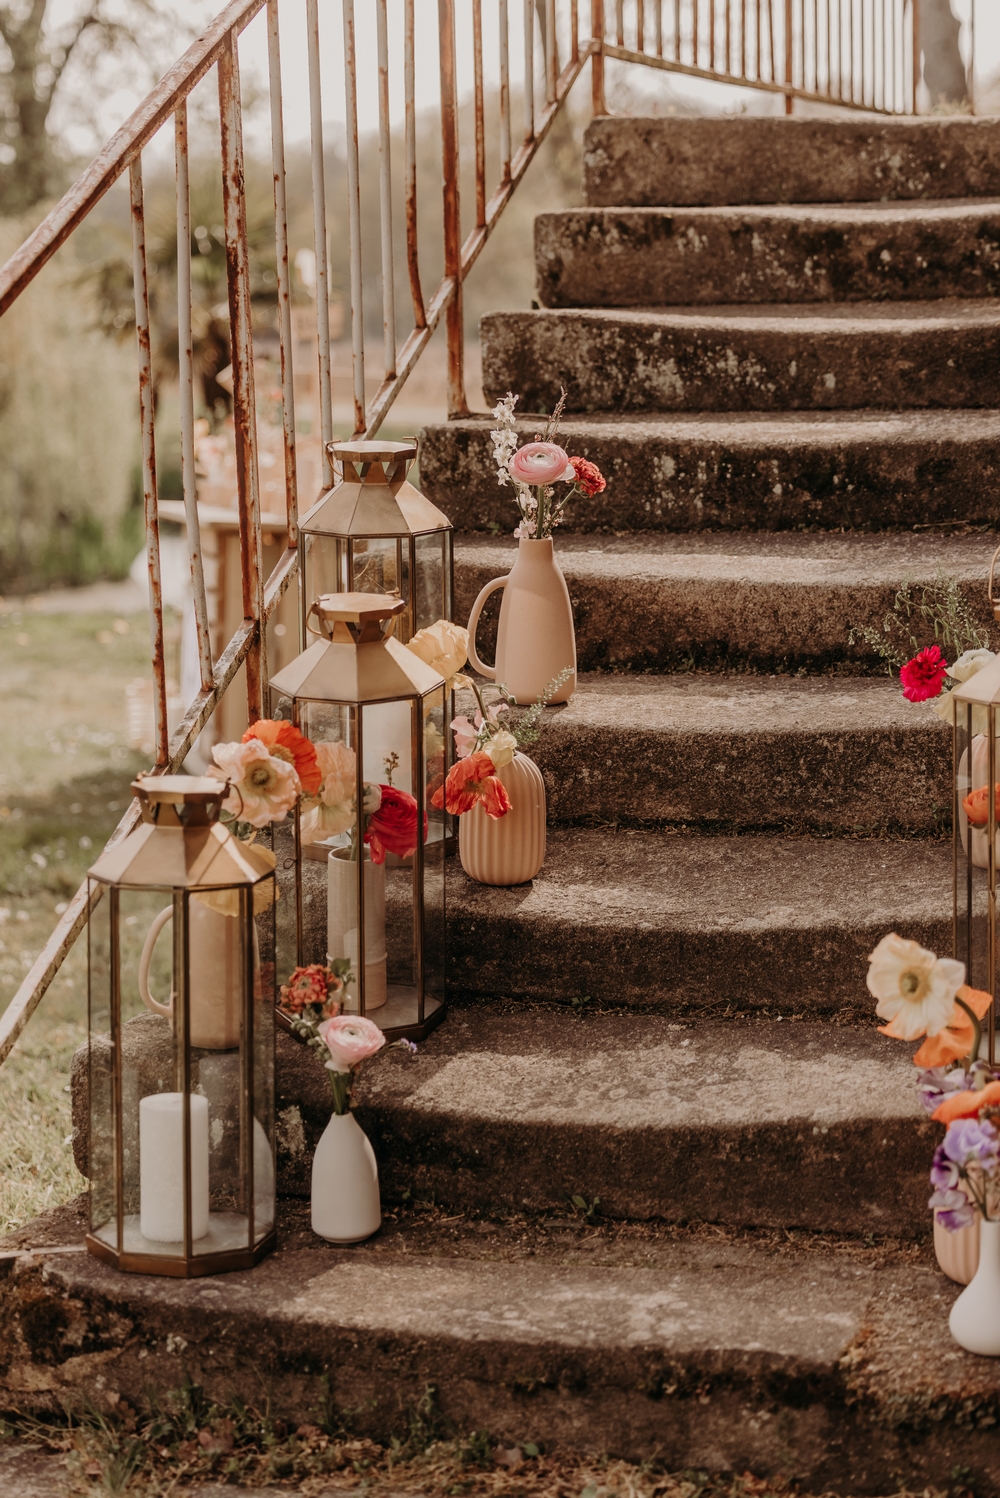 decoration-escalier-mariage-OBDD